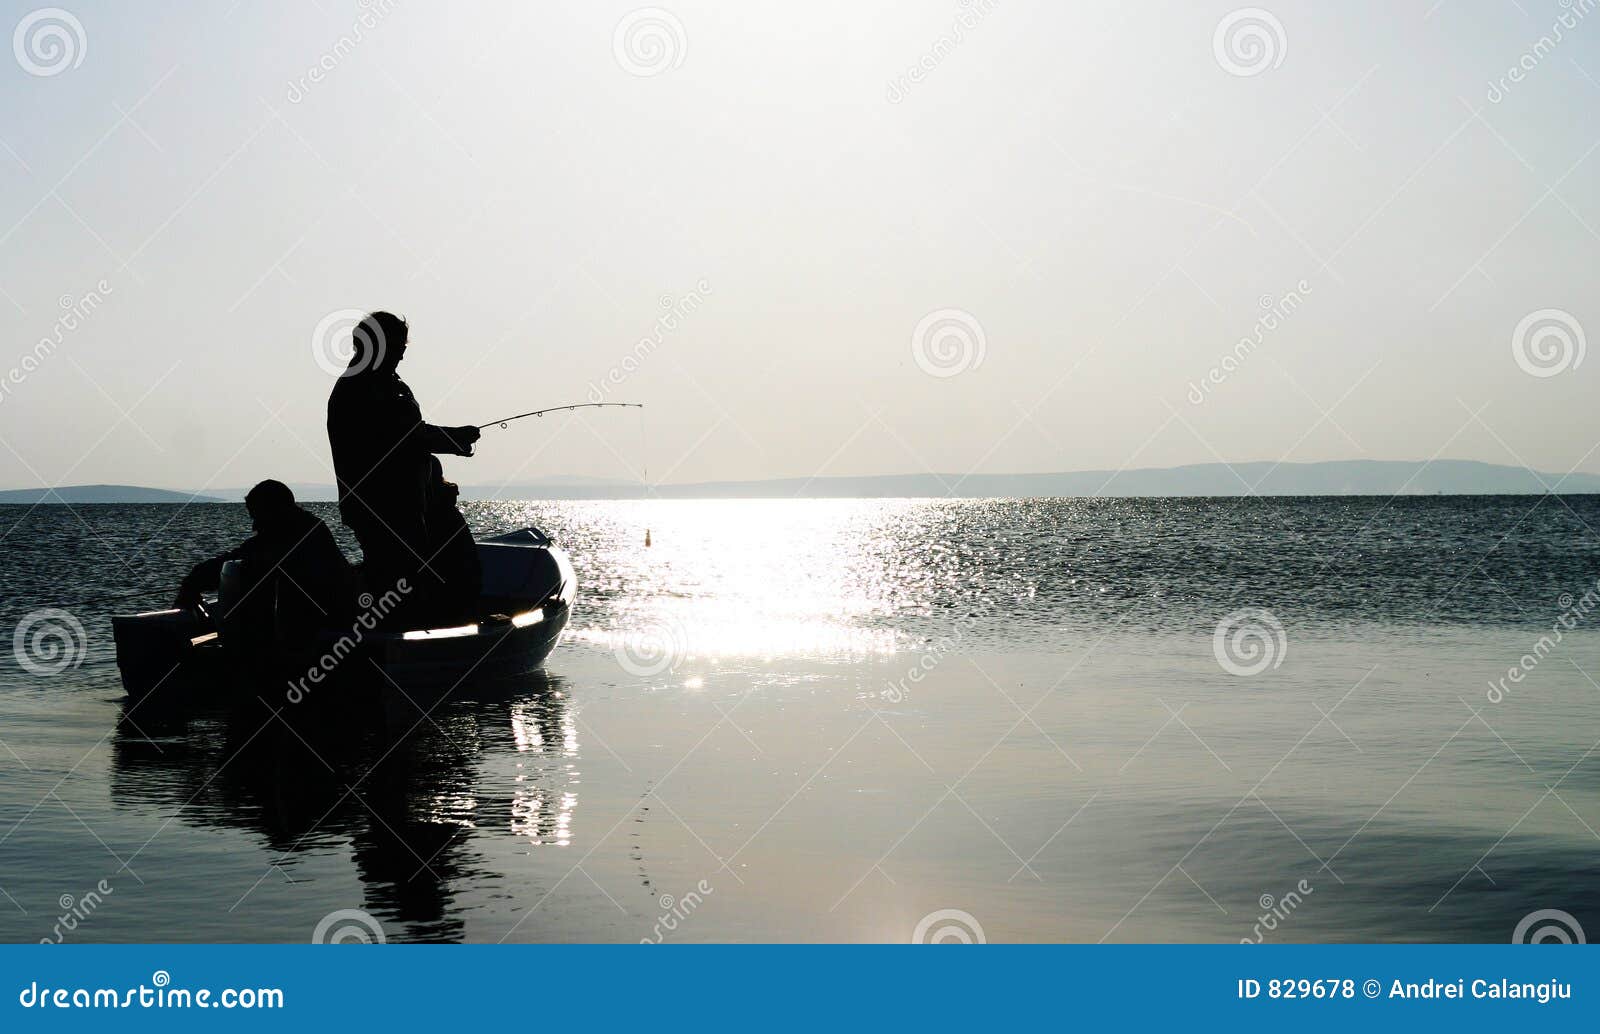 pike fishing